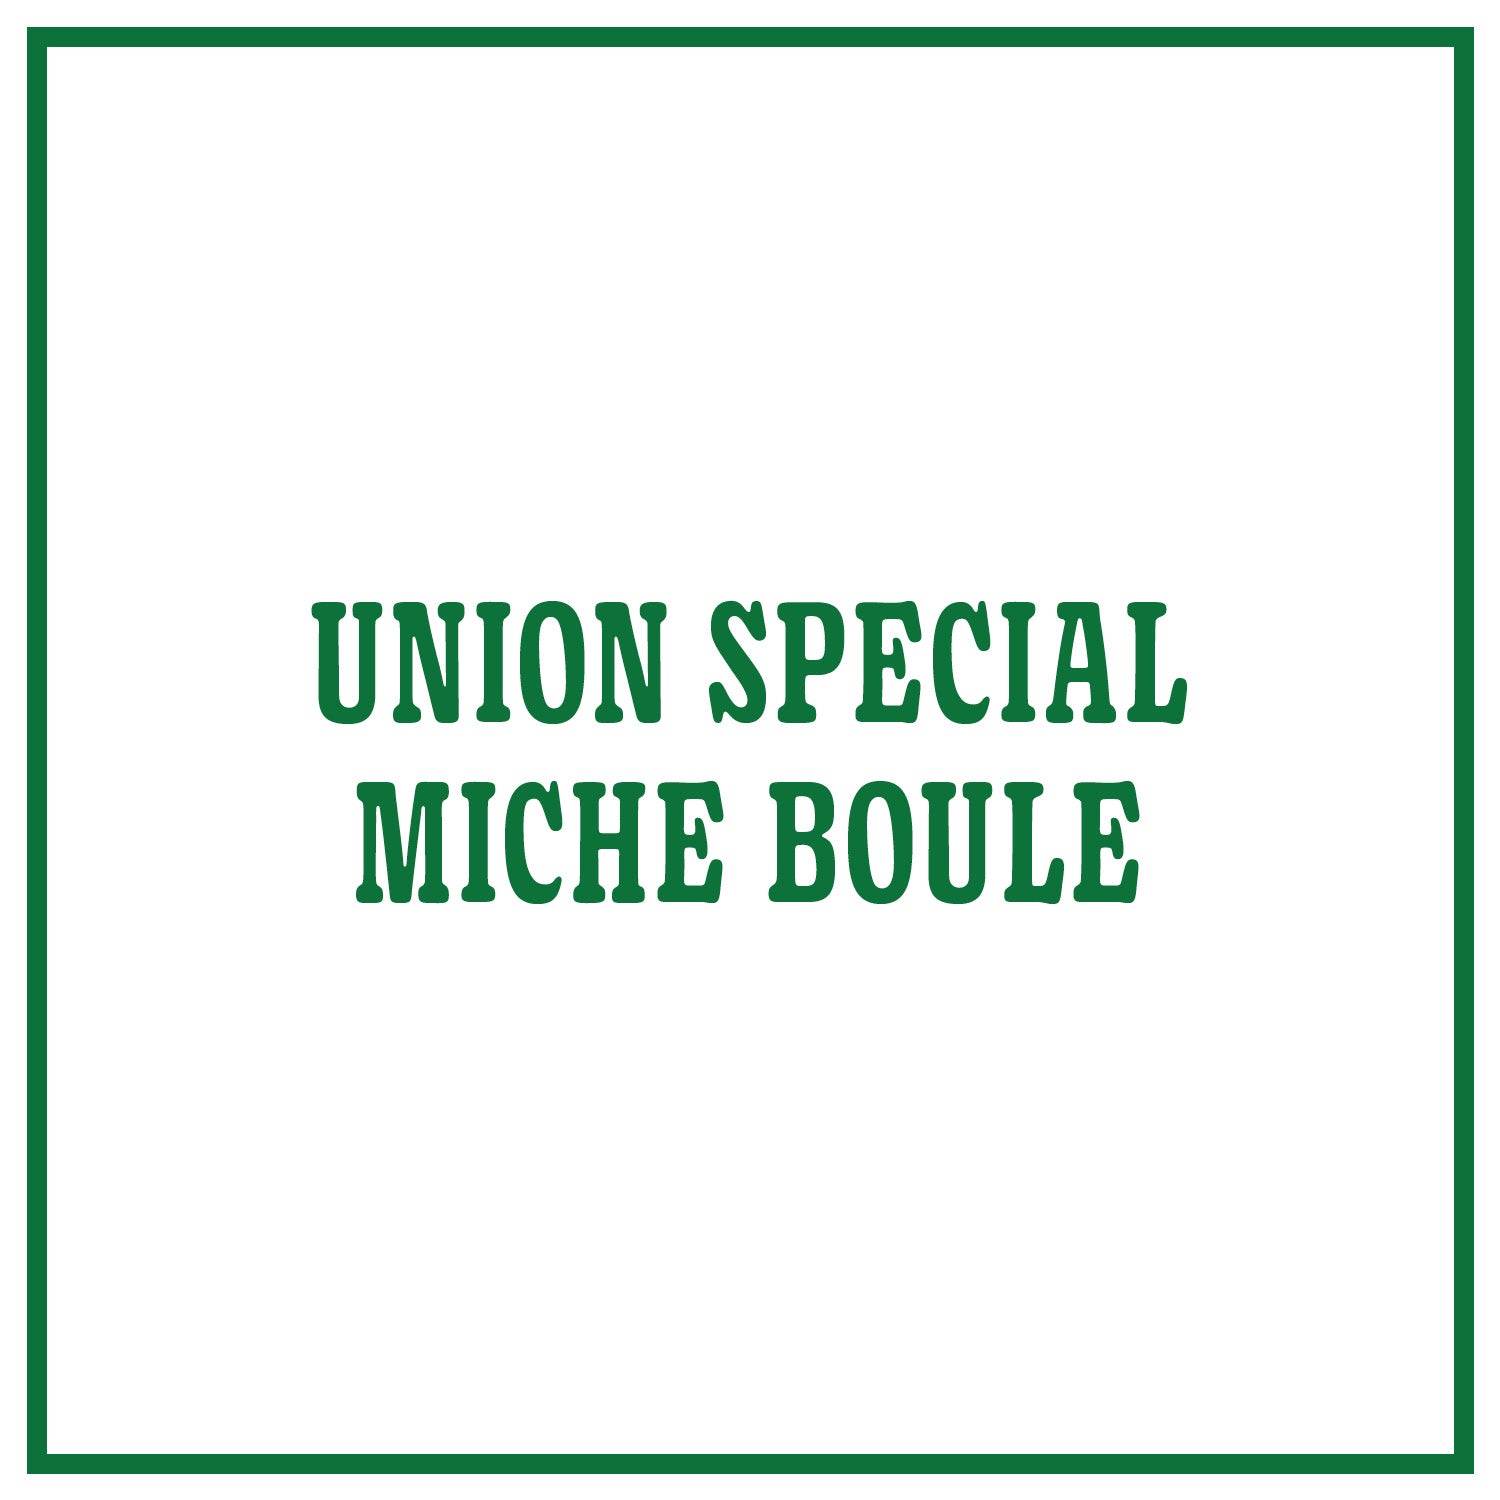 Union Special Miche Boule